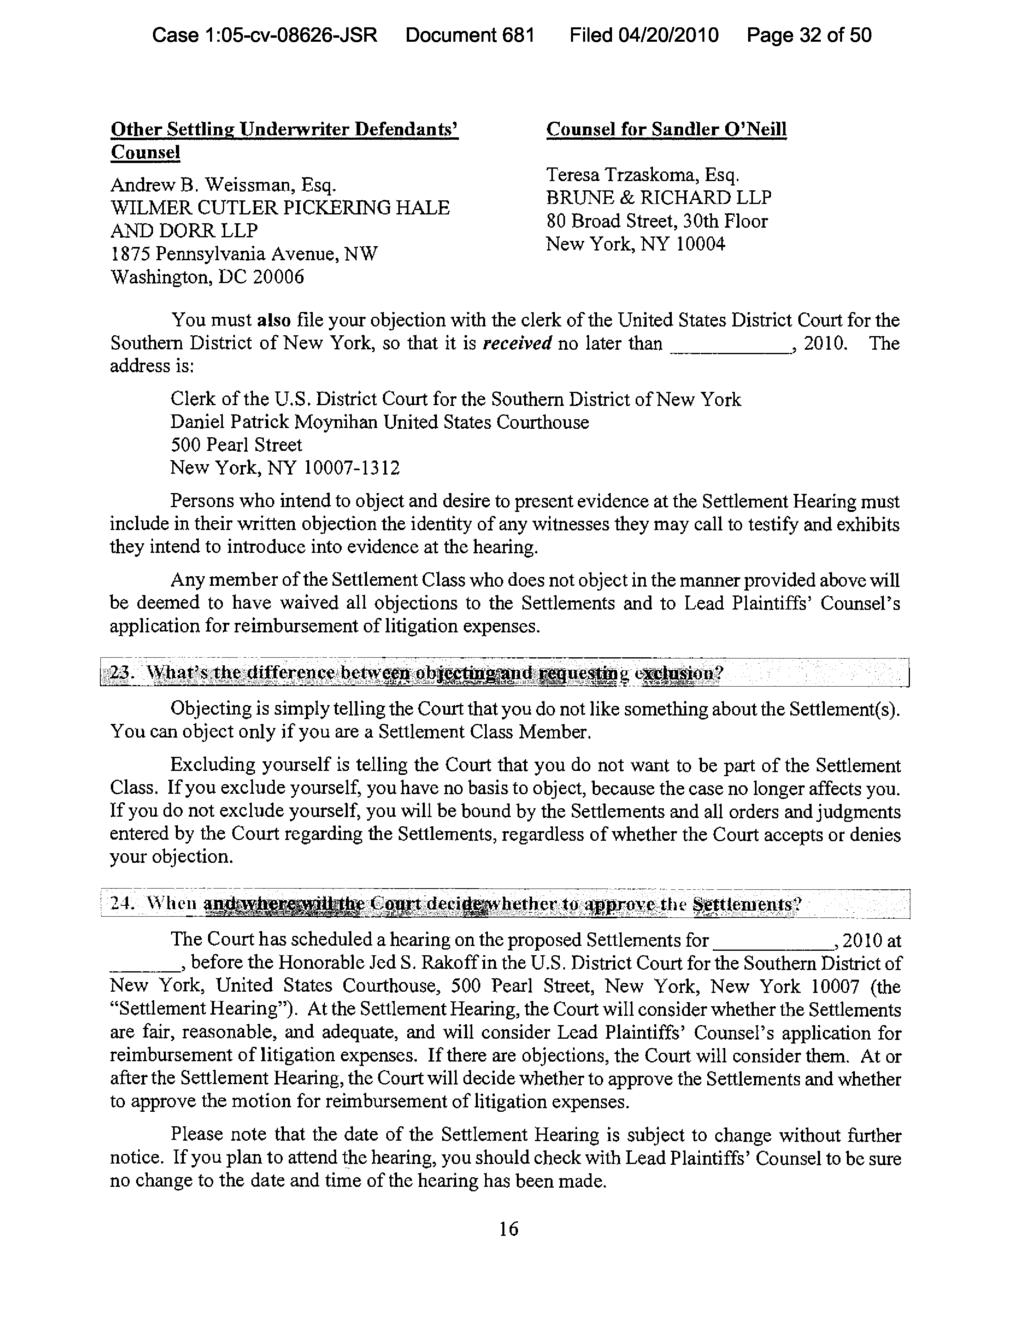 Case 1:05-cv-08626-JSR Document 681 Filed 04/20/2010 Page 32 of 50 Other Settling Underwriter Defendants' Counsel for Sandler O'Neill Counsel Andrew B. Weissman, Esq. Teresa Trzaskoma, Esq.